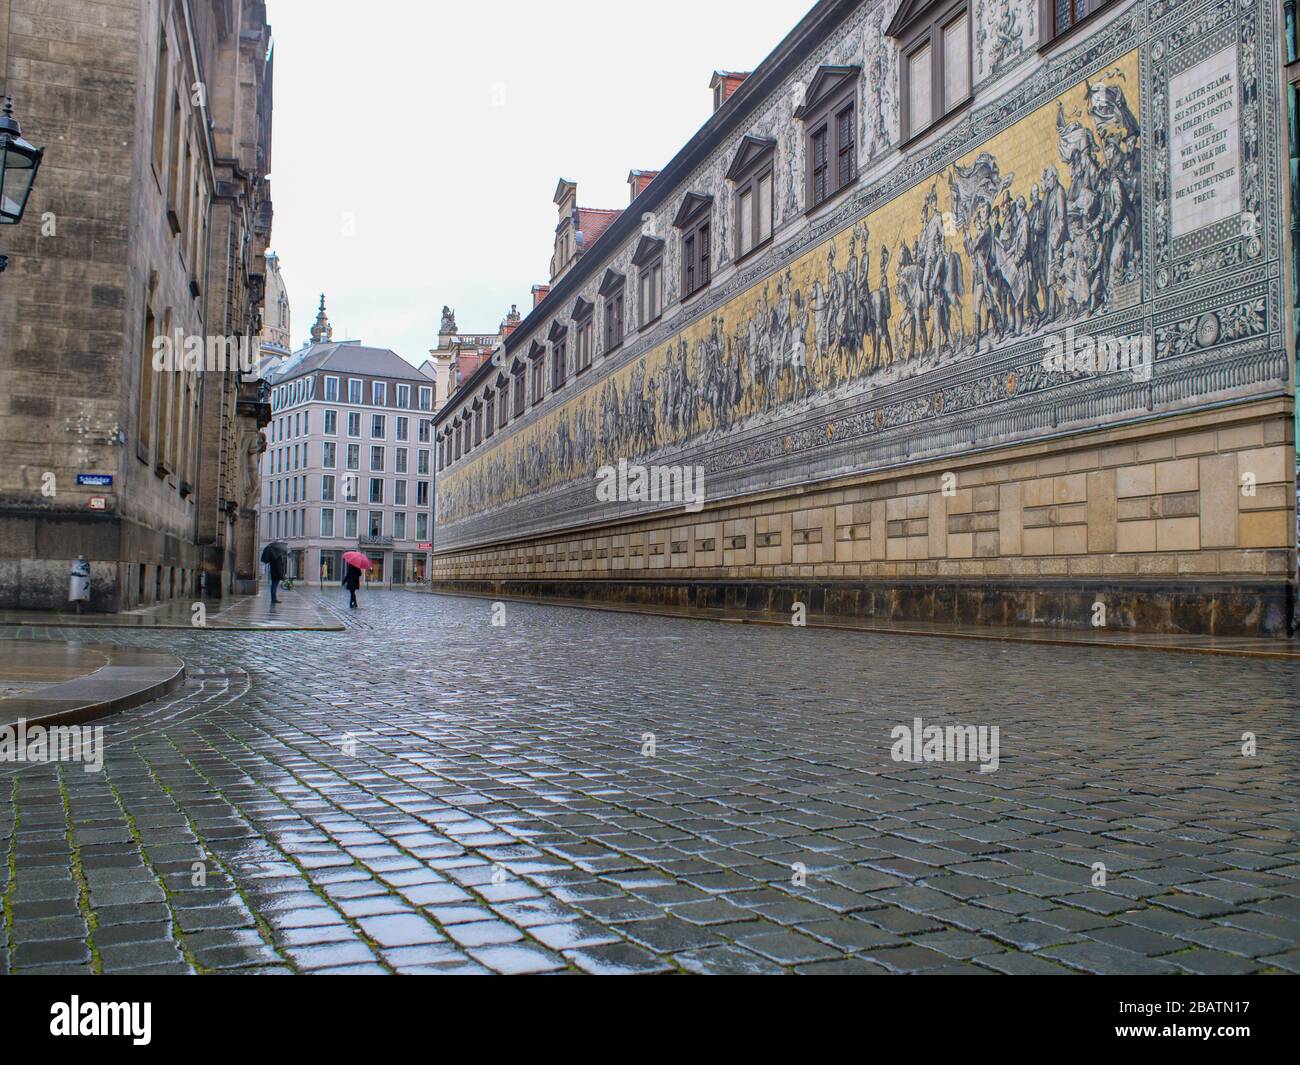 Dresda Fürstenzug Am Residenzschloss während Coronavirus Lockdown 2020 bei Regen Foto Stock